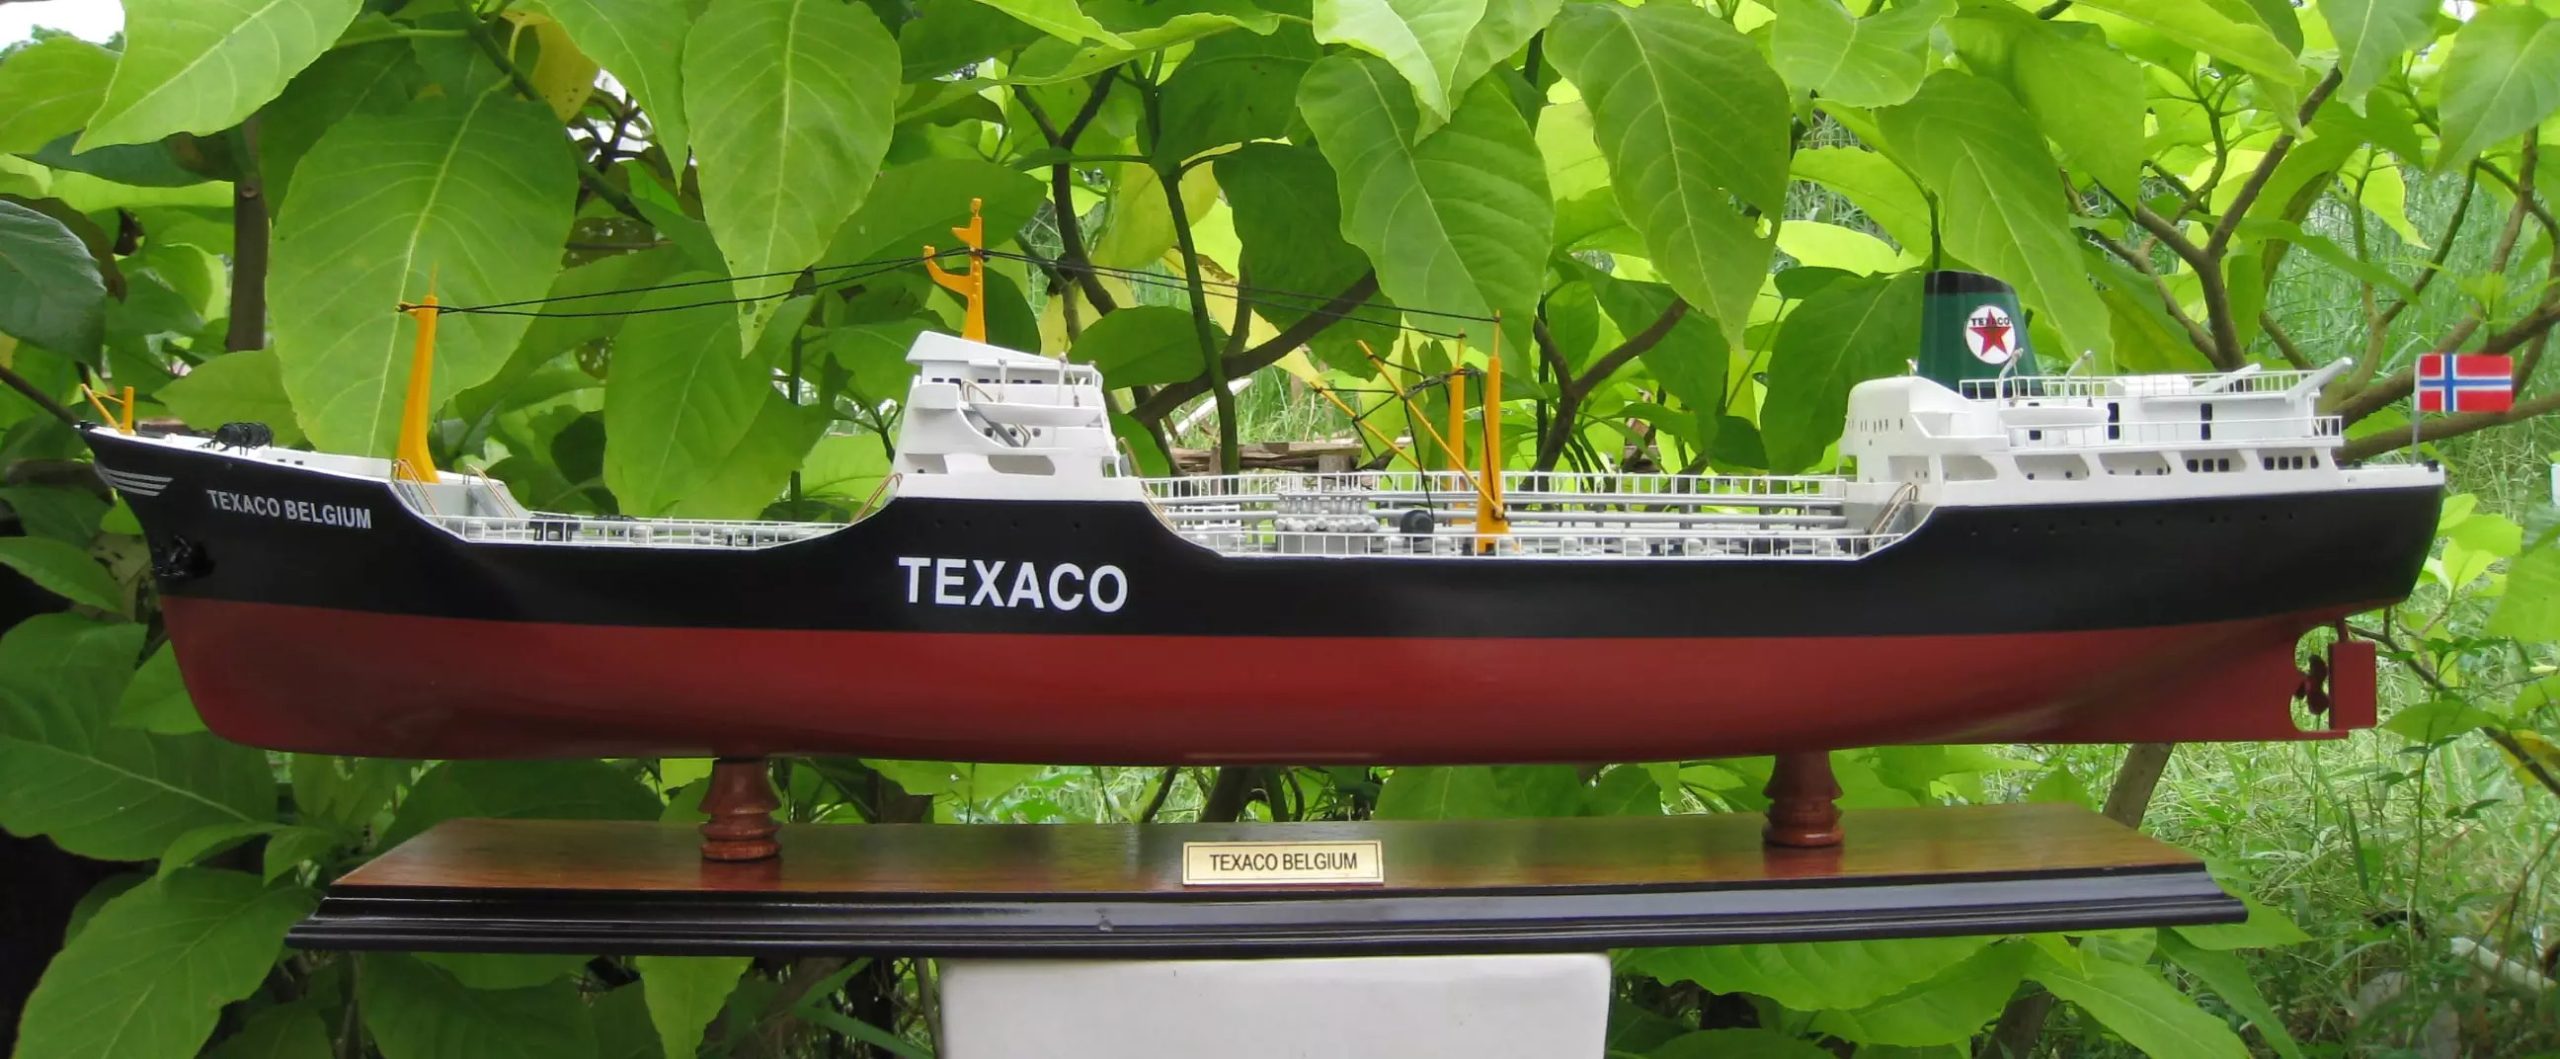 Maquette de bateau Texaco Belgium - GN